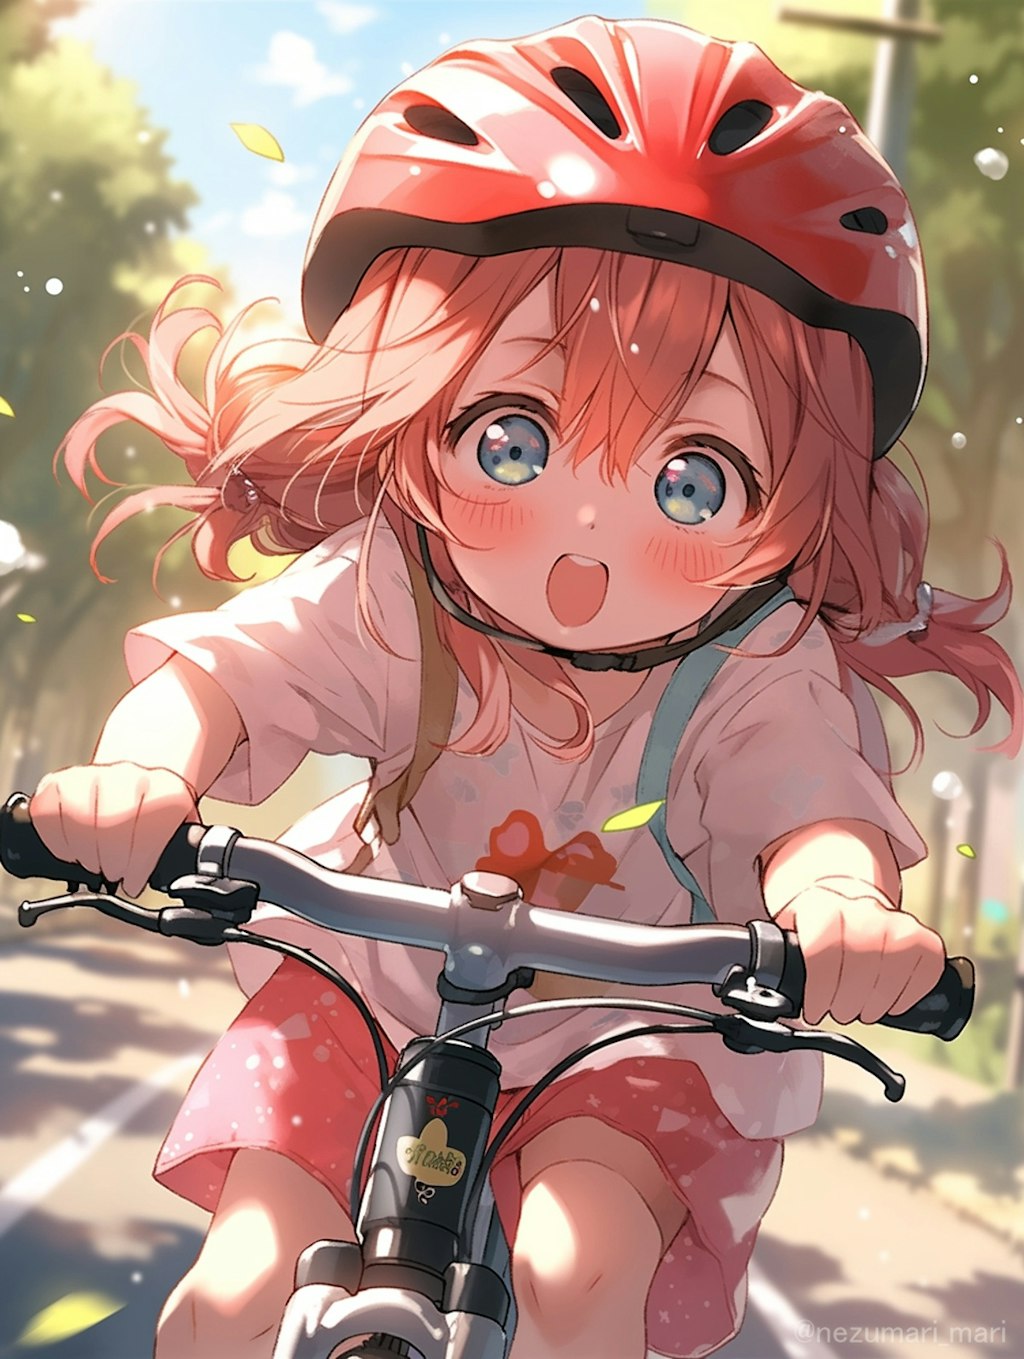 サイクリング